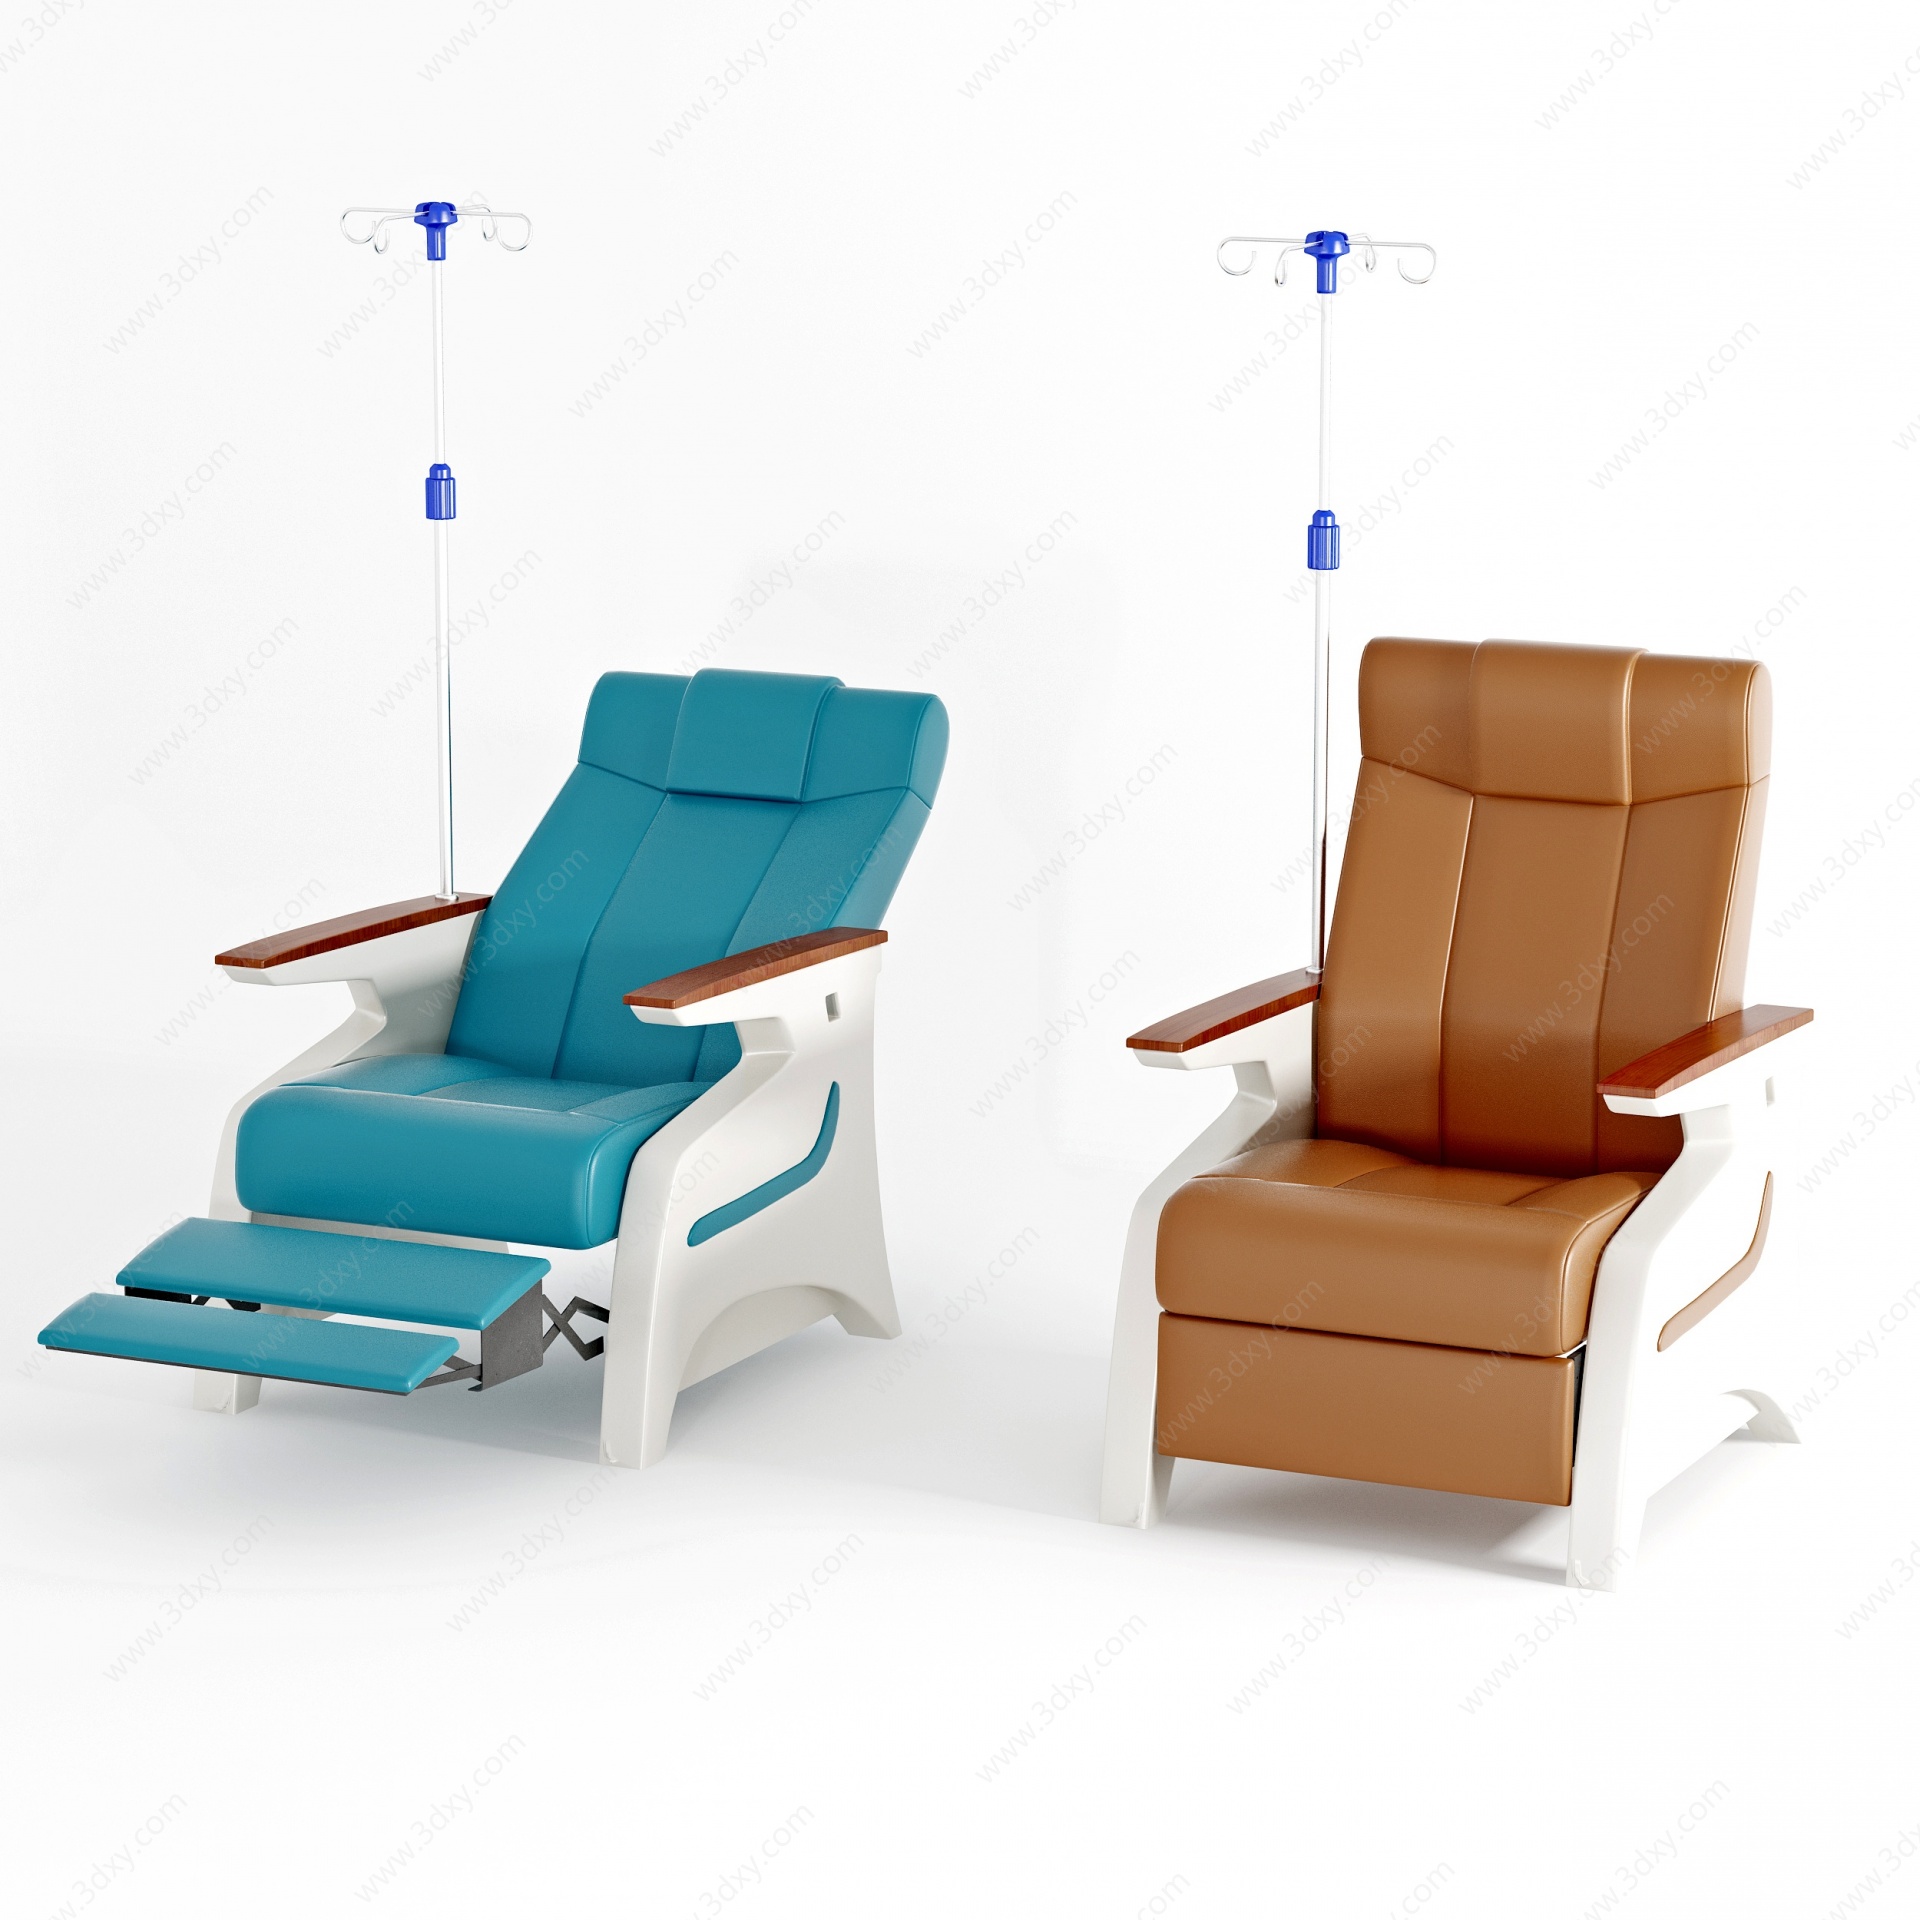 现代医院输液椅3D模型